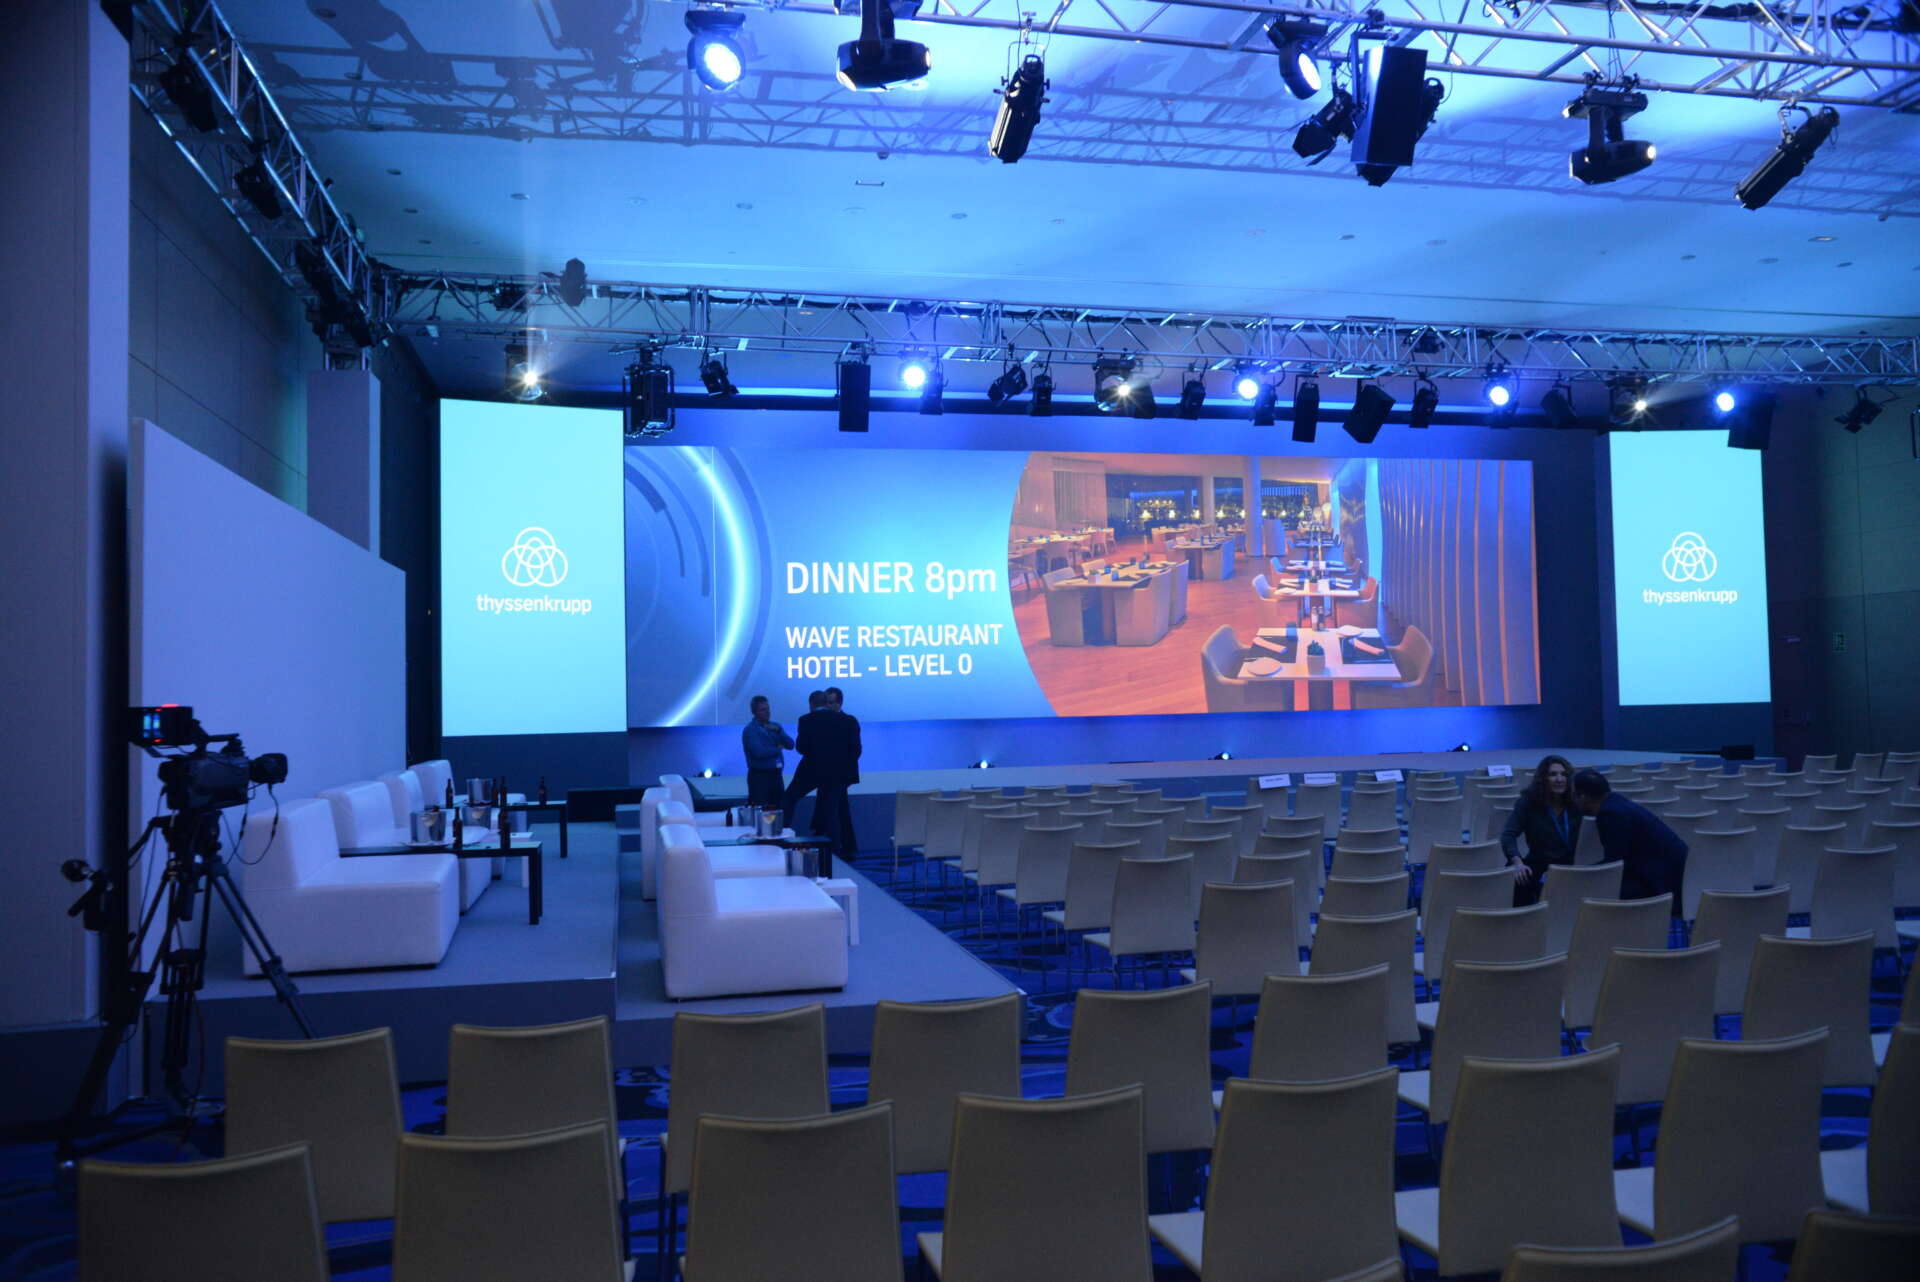 Die Buehne und der Zuschauerraum auf Thyssenkrupp Leadership Conference 2018 mit eingeschalteter Showbeleuchtung